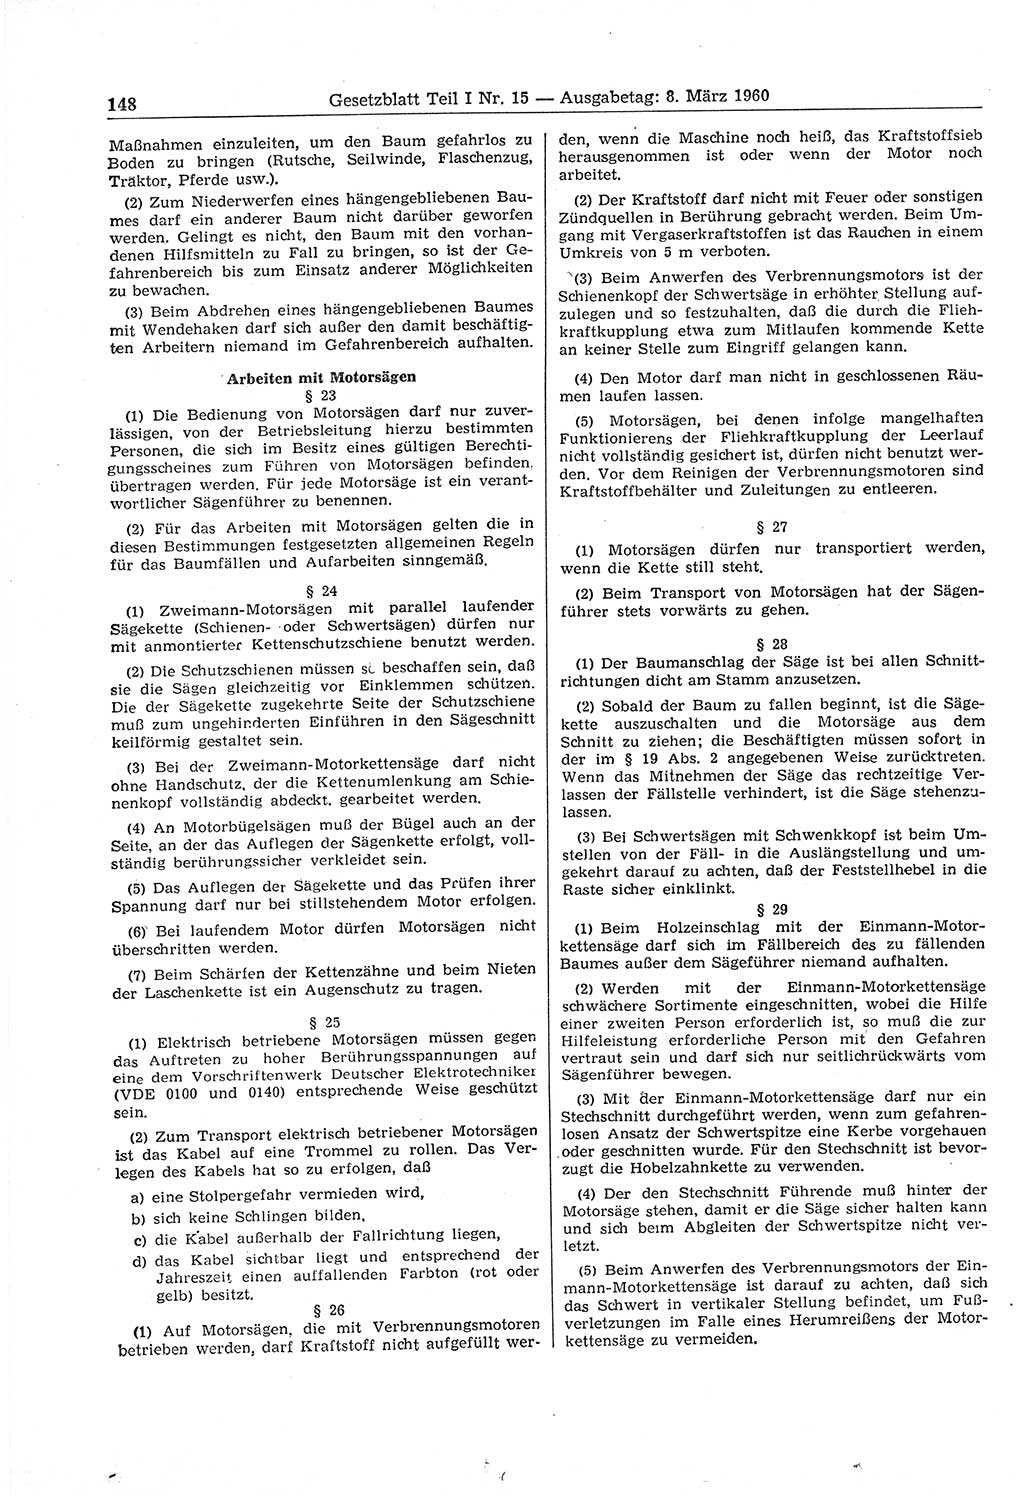 Gesetzblatt (GBl.) der Deutschen Demokratischen Republik (DDR) Teil Ⅰ 1960, Seite 148 (GBl. DDR Ⅰ 1960, S. 148)